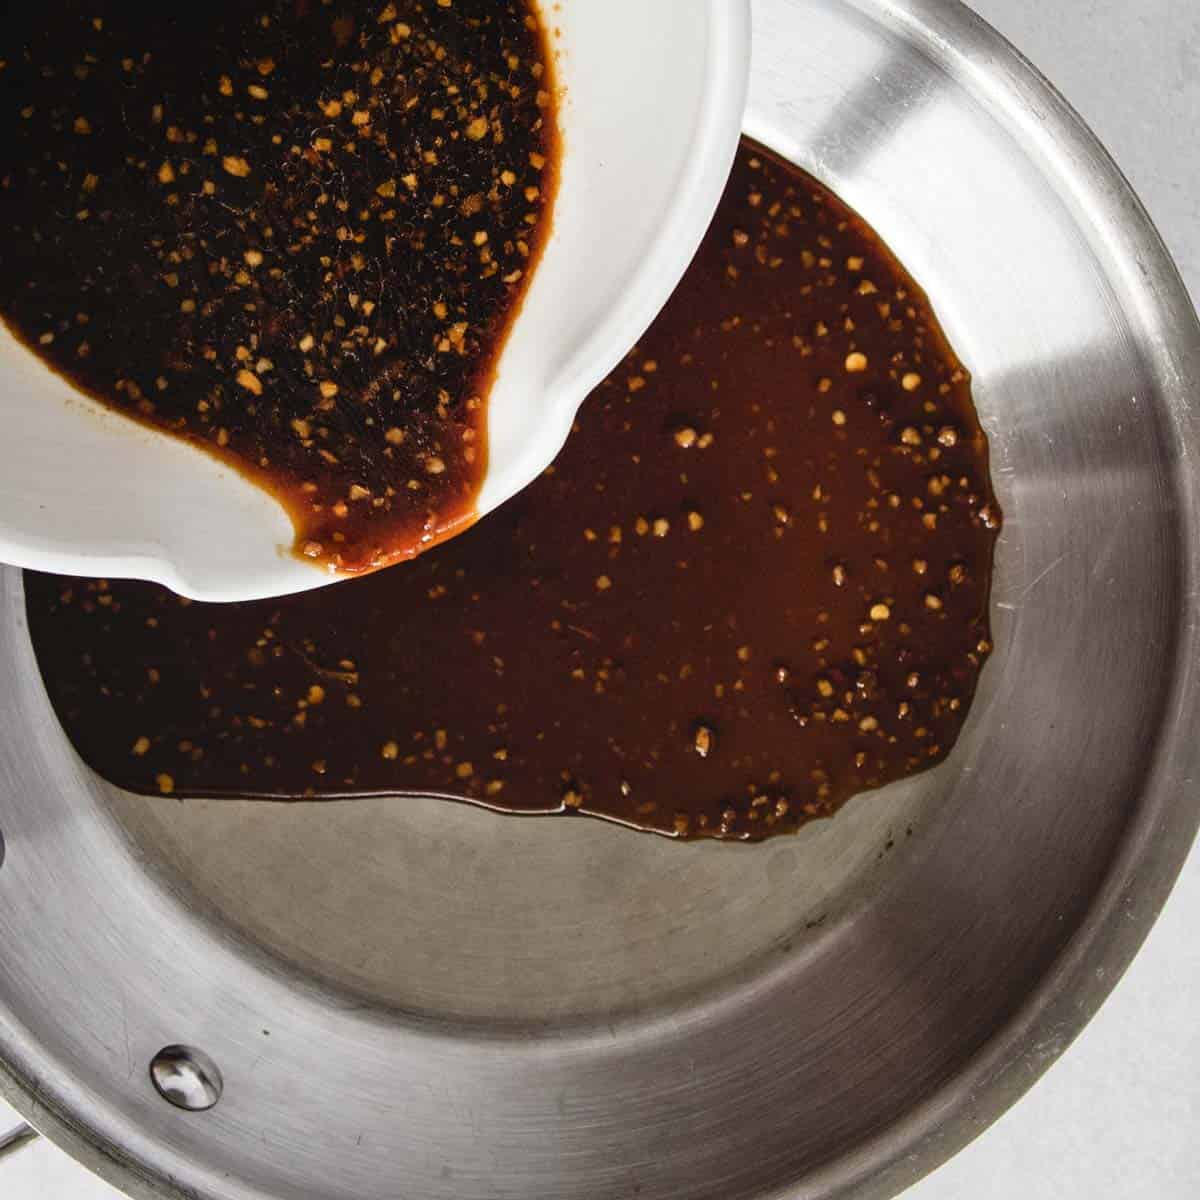 Teriyaki sauce being poured into a pan